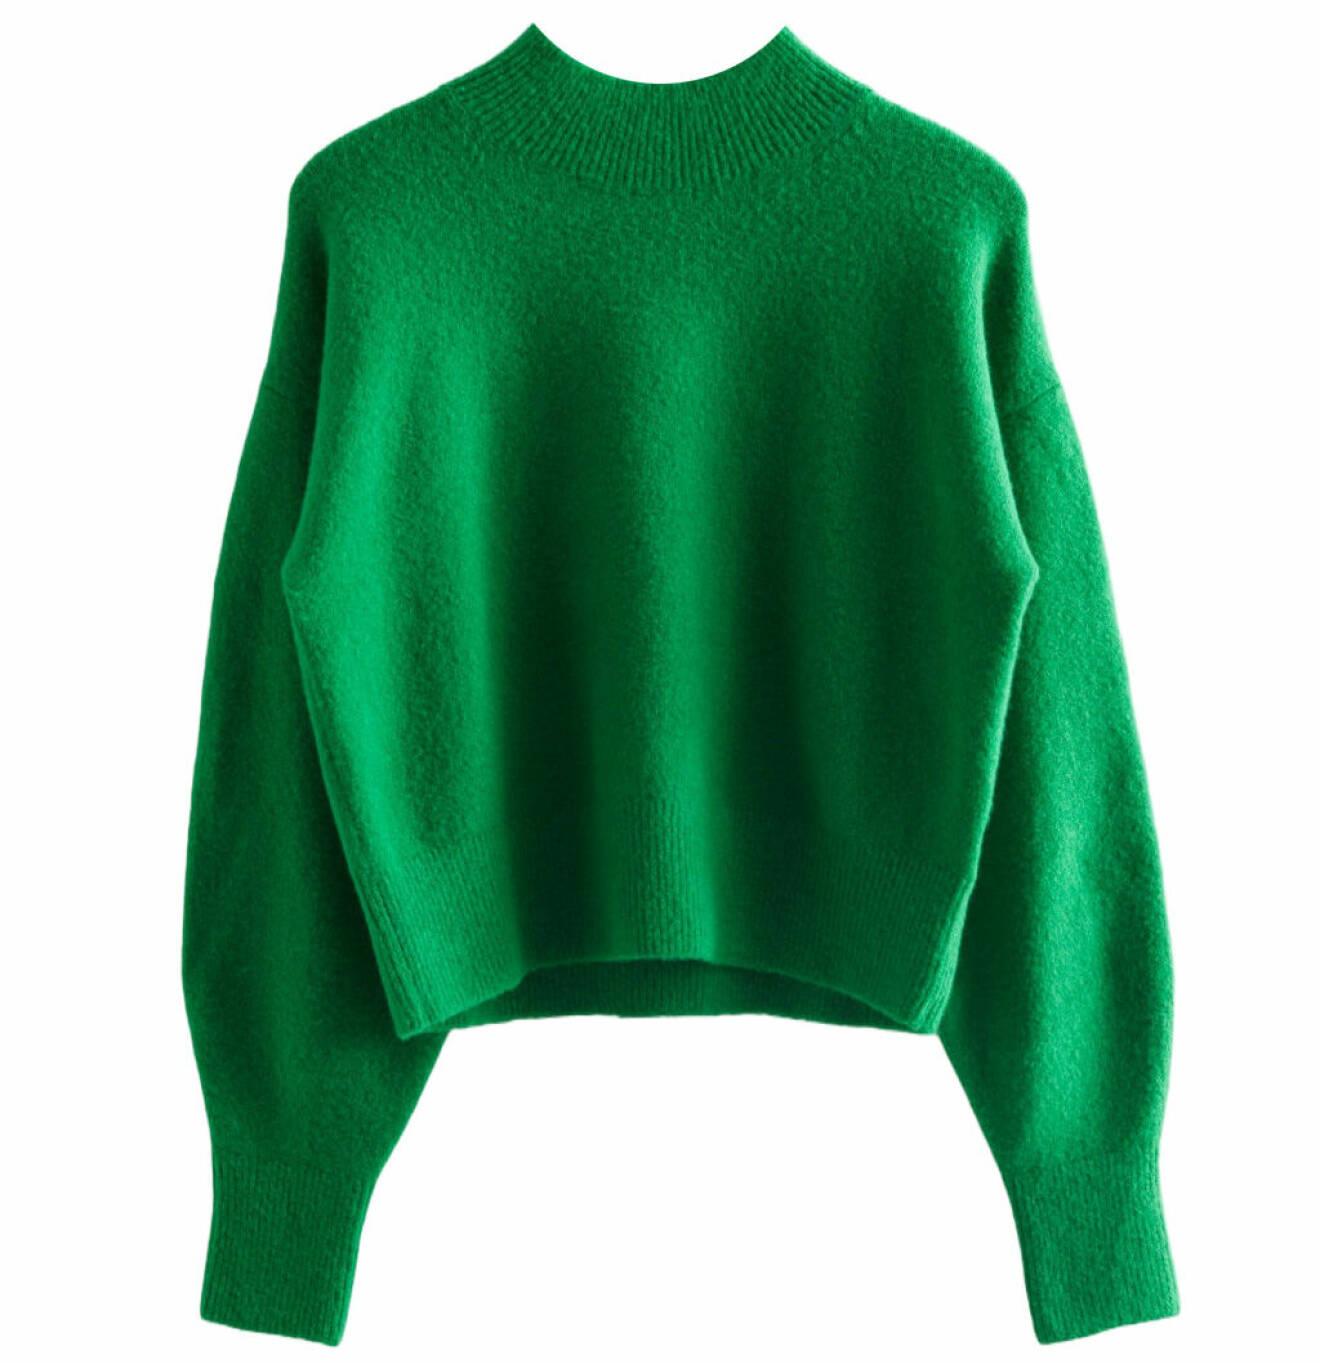 grön stickad tröja